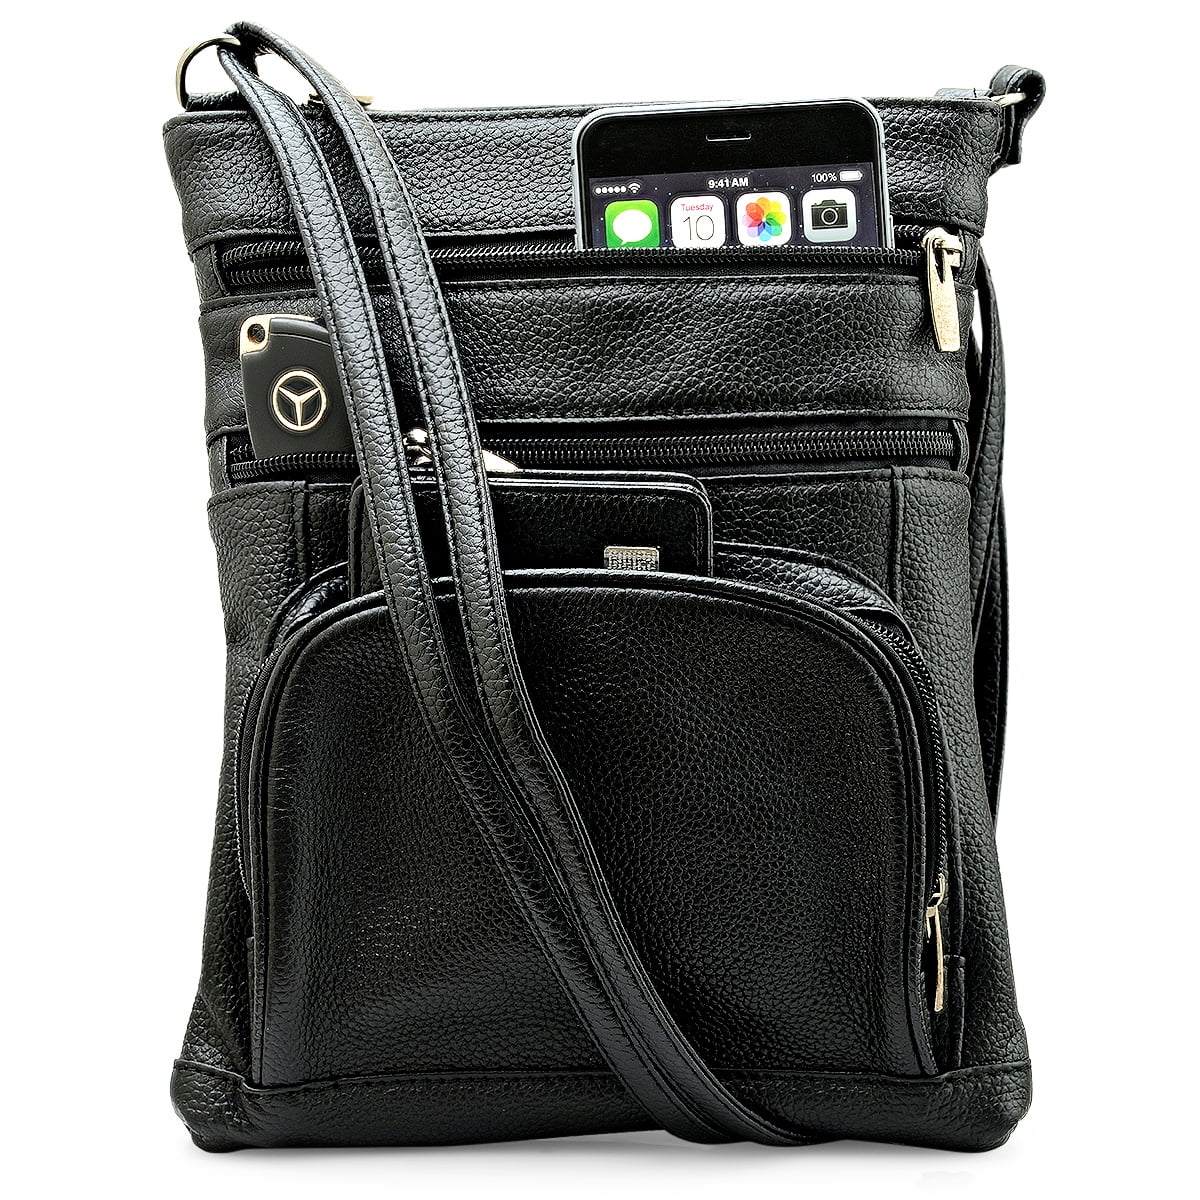 Black 6 Pocket Soft Lambskin Leather Cross Body or Shoulder Bag Light Weight 